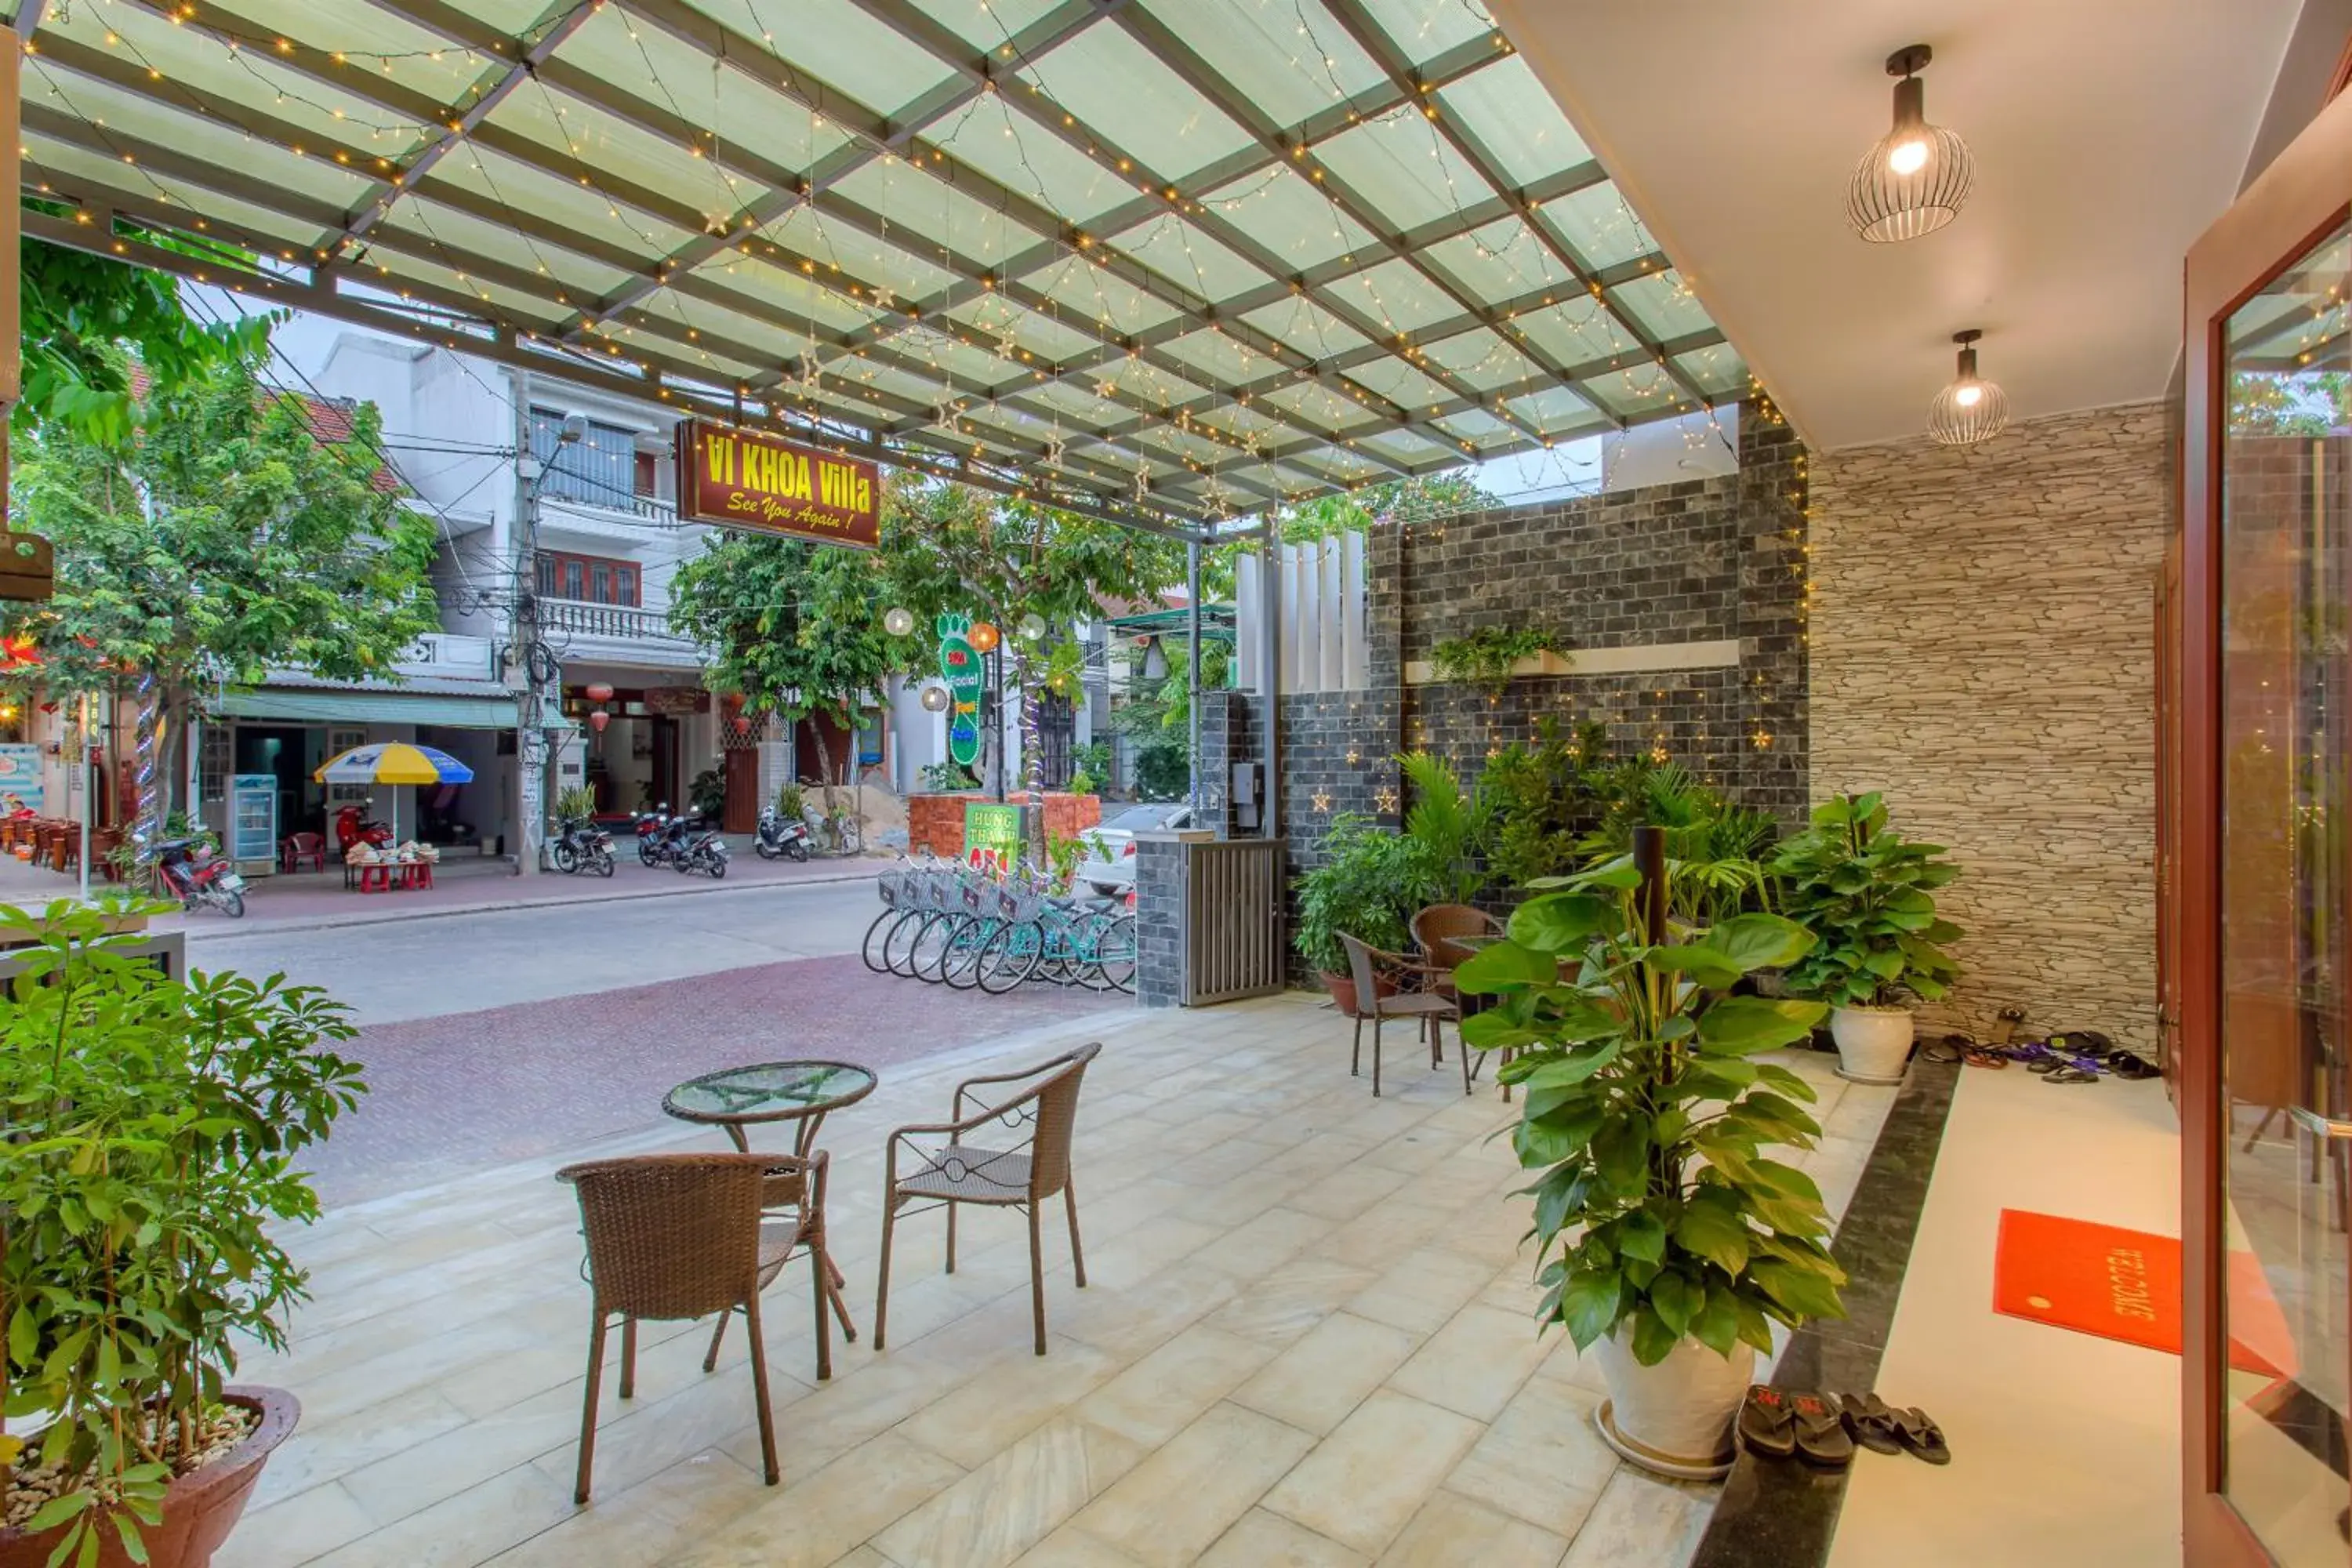 Facade/entrance, Restaurant/Places to Eat in Hoi An Vi Khoa Villa